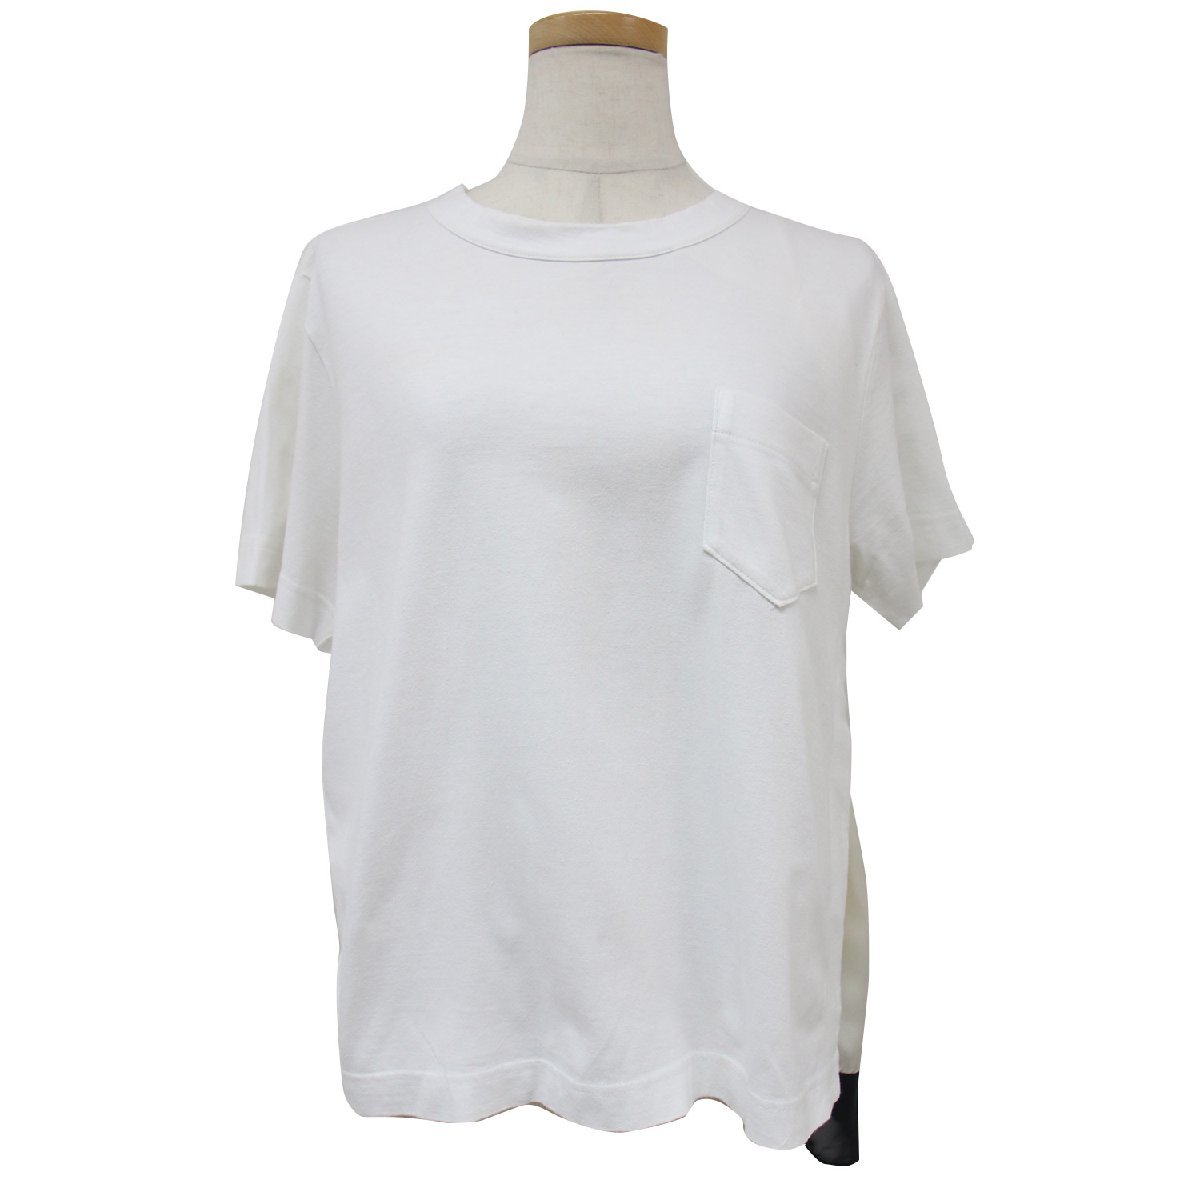 Sacai サカイ カットソー Tシャツ プルオーバー トップス カットソー ホワイト 白 2(M) 半袖 ドレープ パネル 異素材 変形 スカーフ